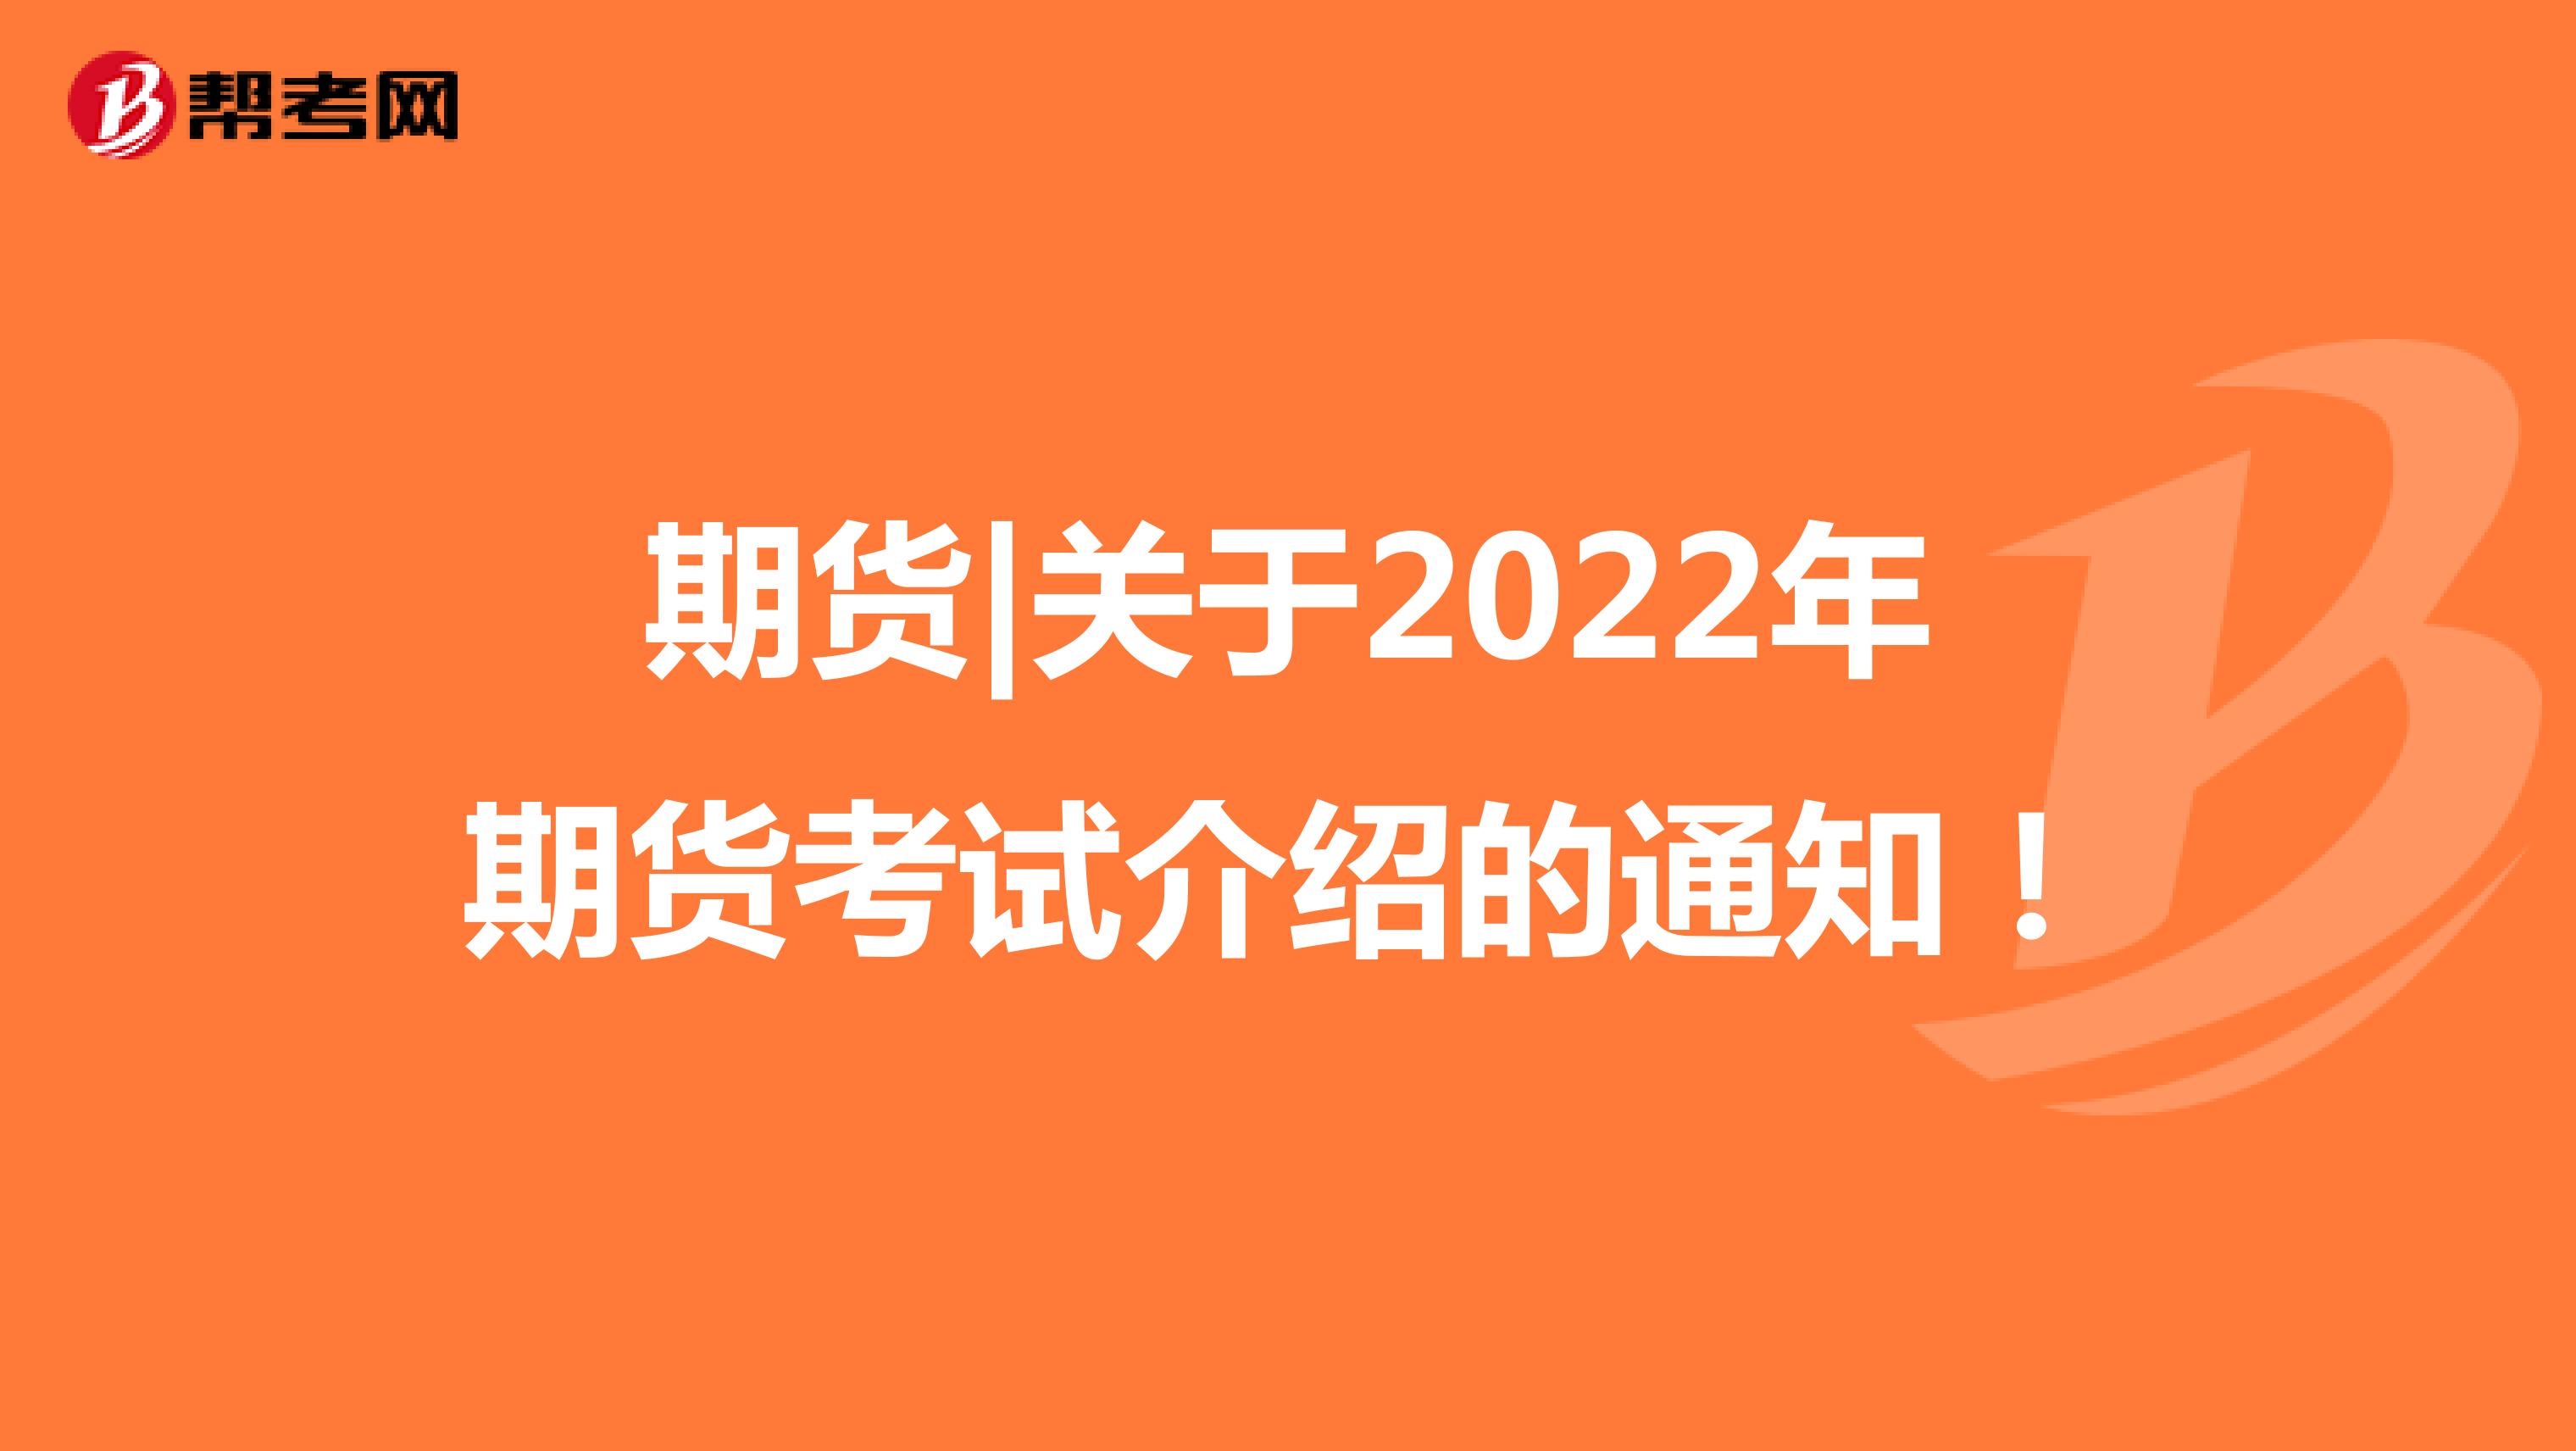 期货|关于2022年期货考试介绍的通知！